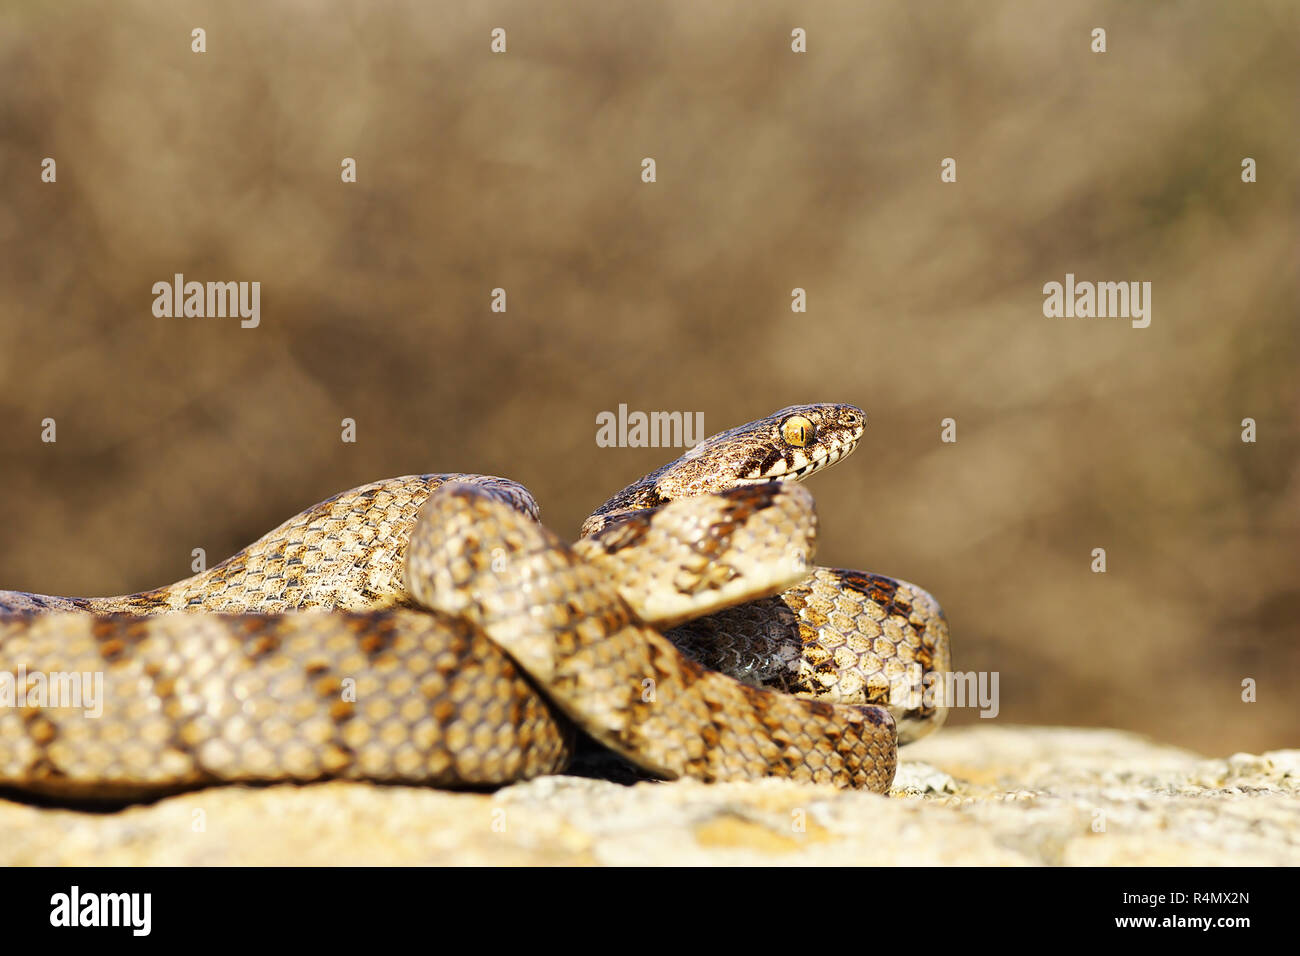 Cat serpiente, longitud total de menores en el entorno natural de reptiles ( Telescopus fallax ) Foto de stock